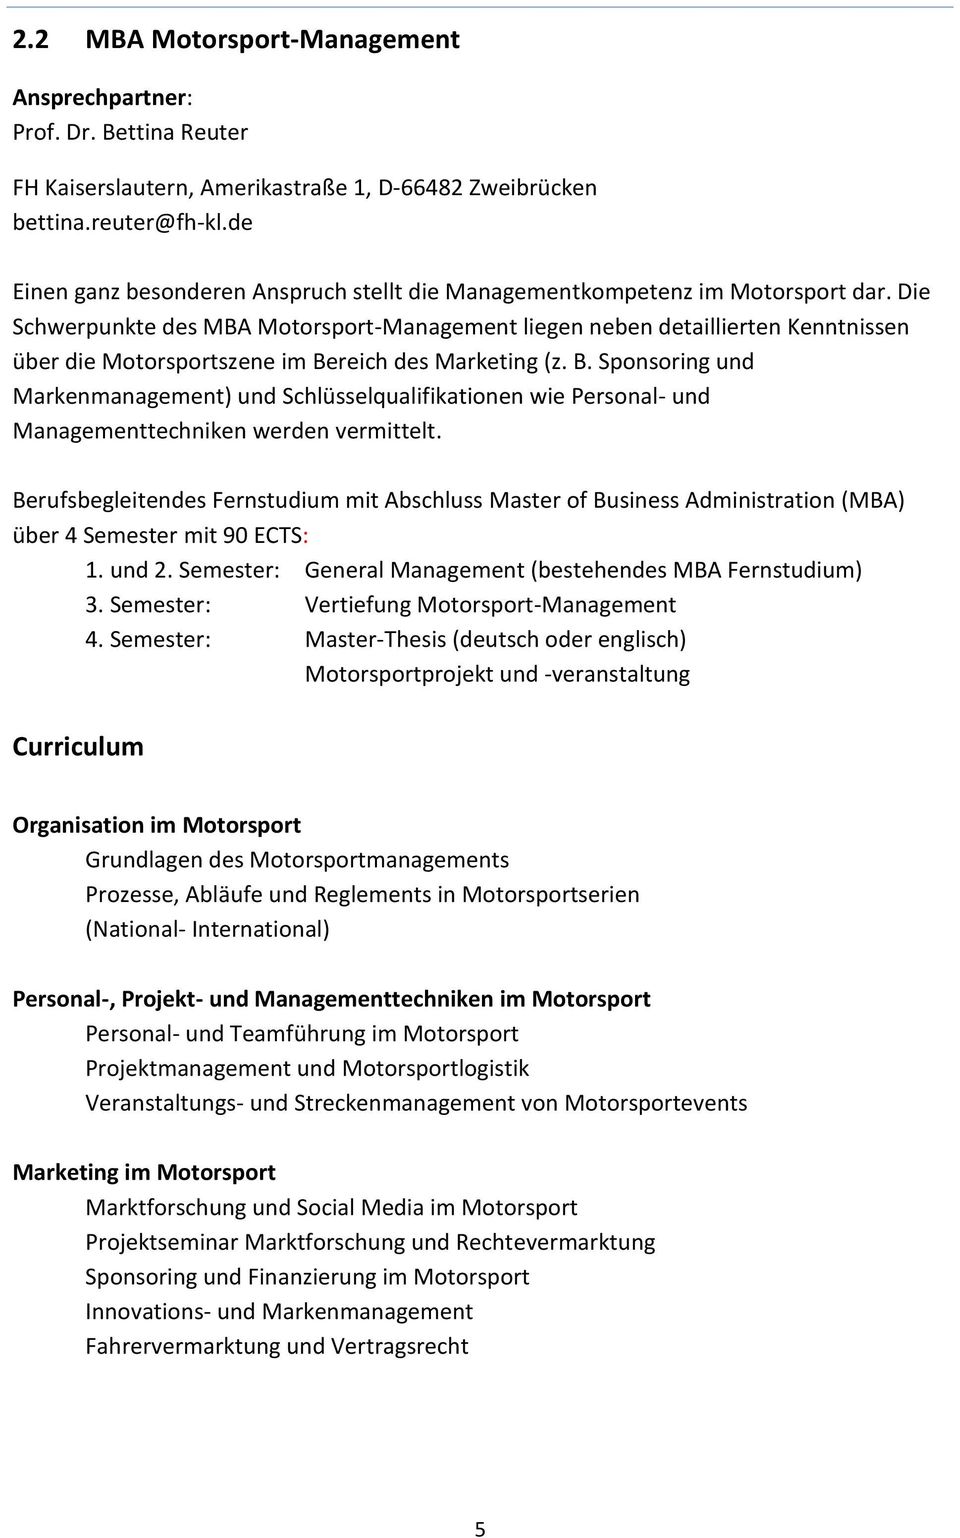 Die Schwerpunkte des MBA Motorsport-Management liegen neben detaillierten Kenntnissen über die Motorsportszene im Be